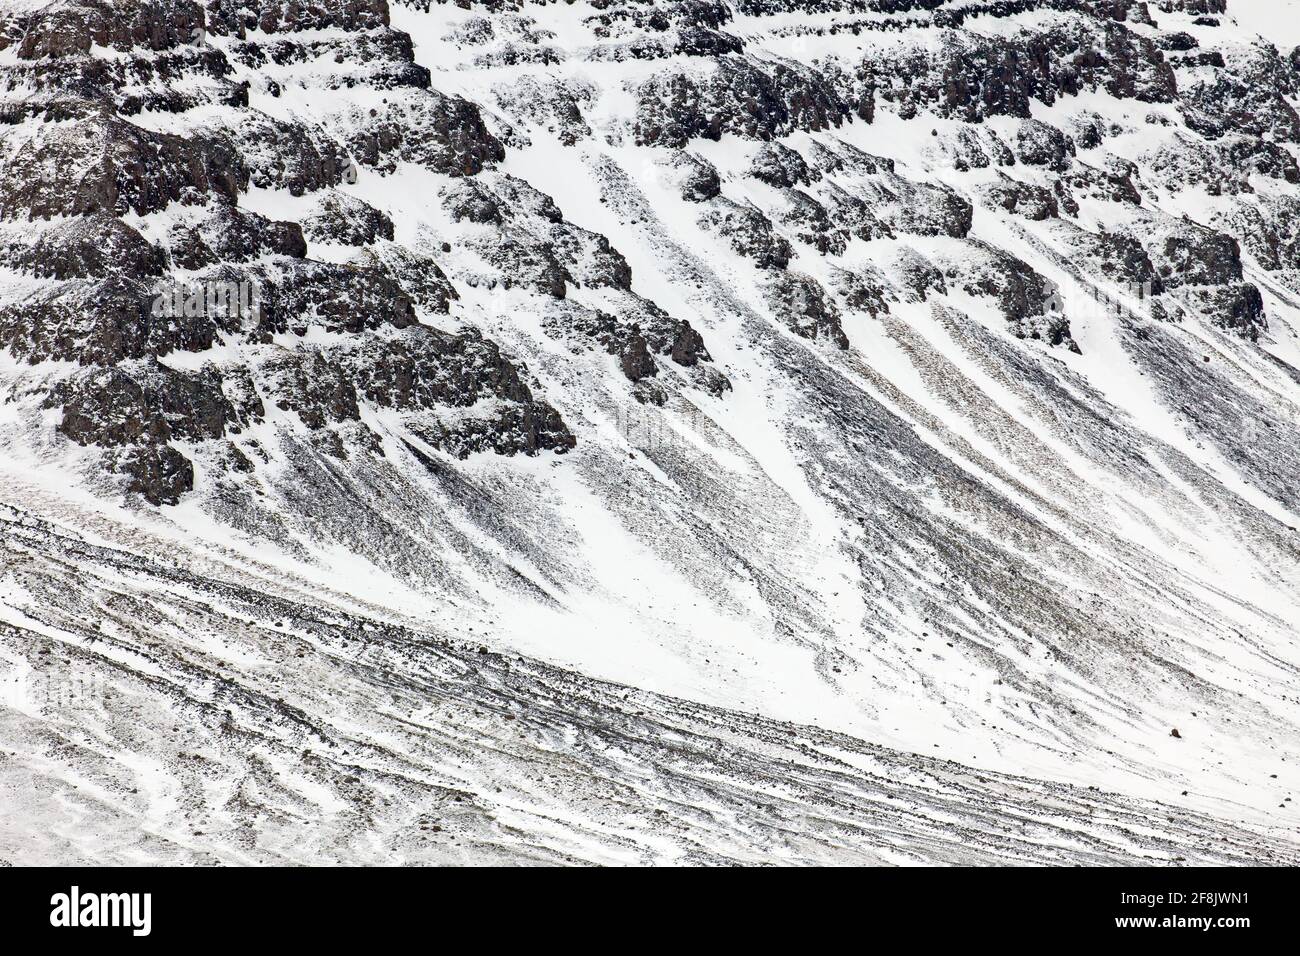 En hiver, à Snaefellsnes, dans l'ouest de l'Islande, les cônes de talus et les cries ont été recouverts de neige, les dépôts de poney à la base de la pente de montagne Banque D'Images